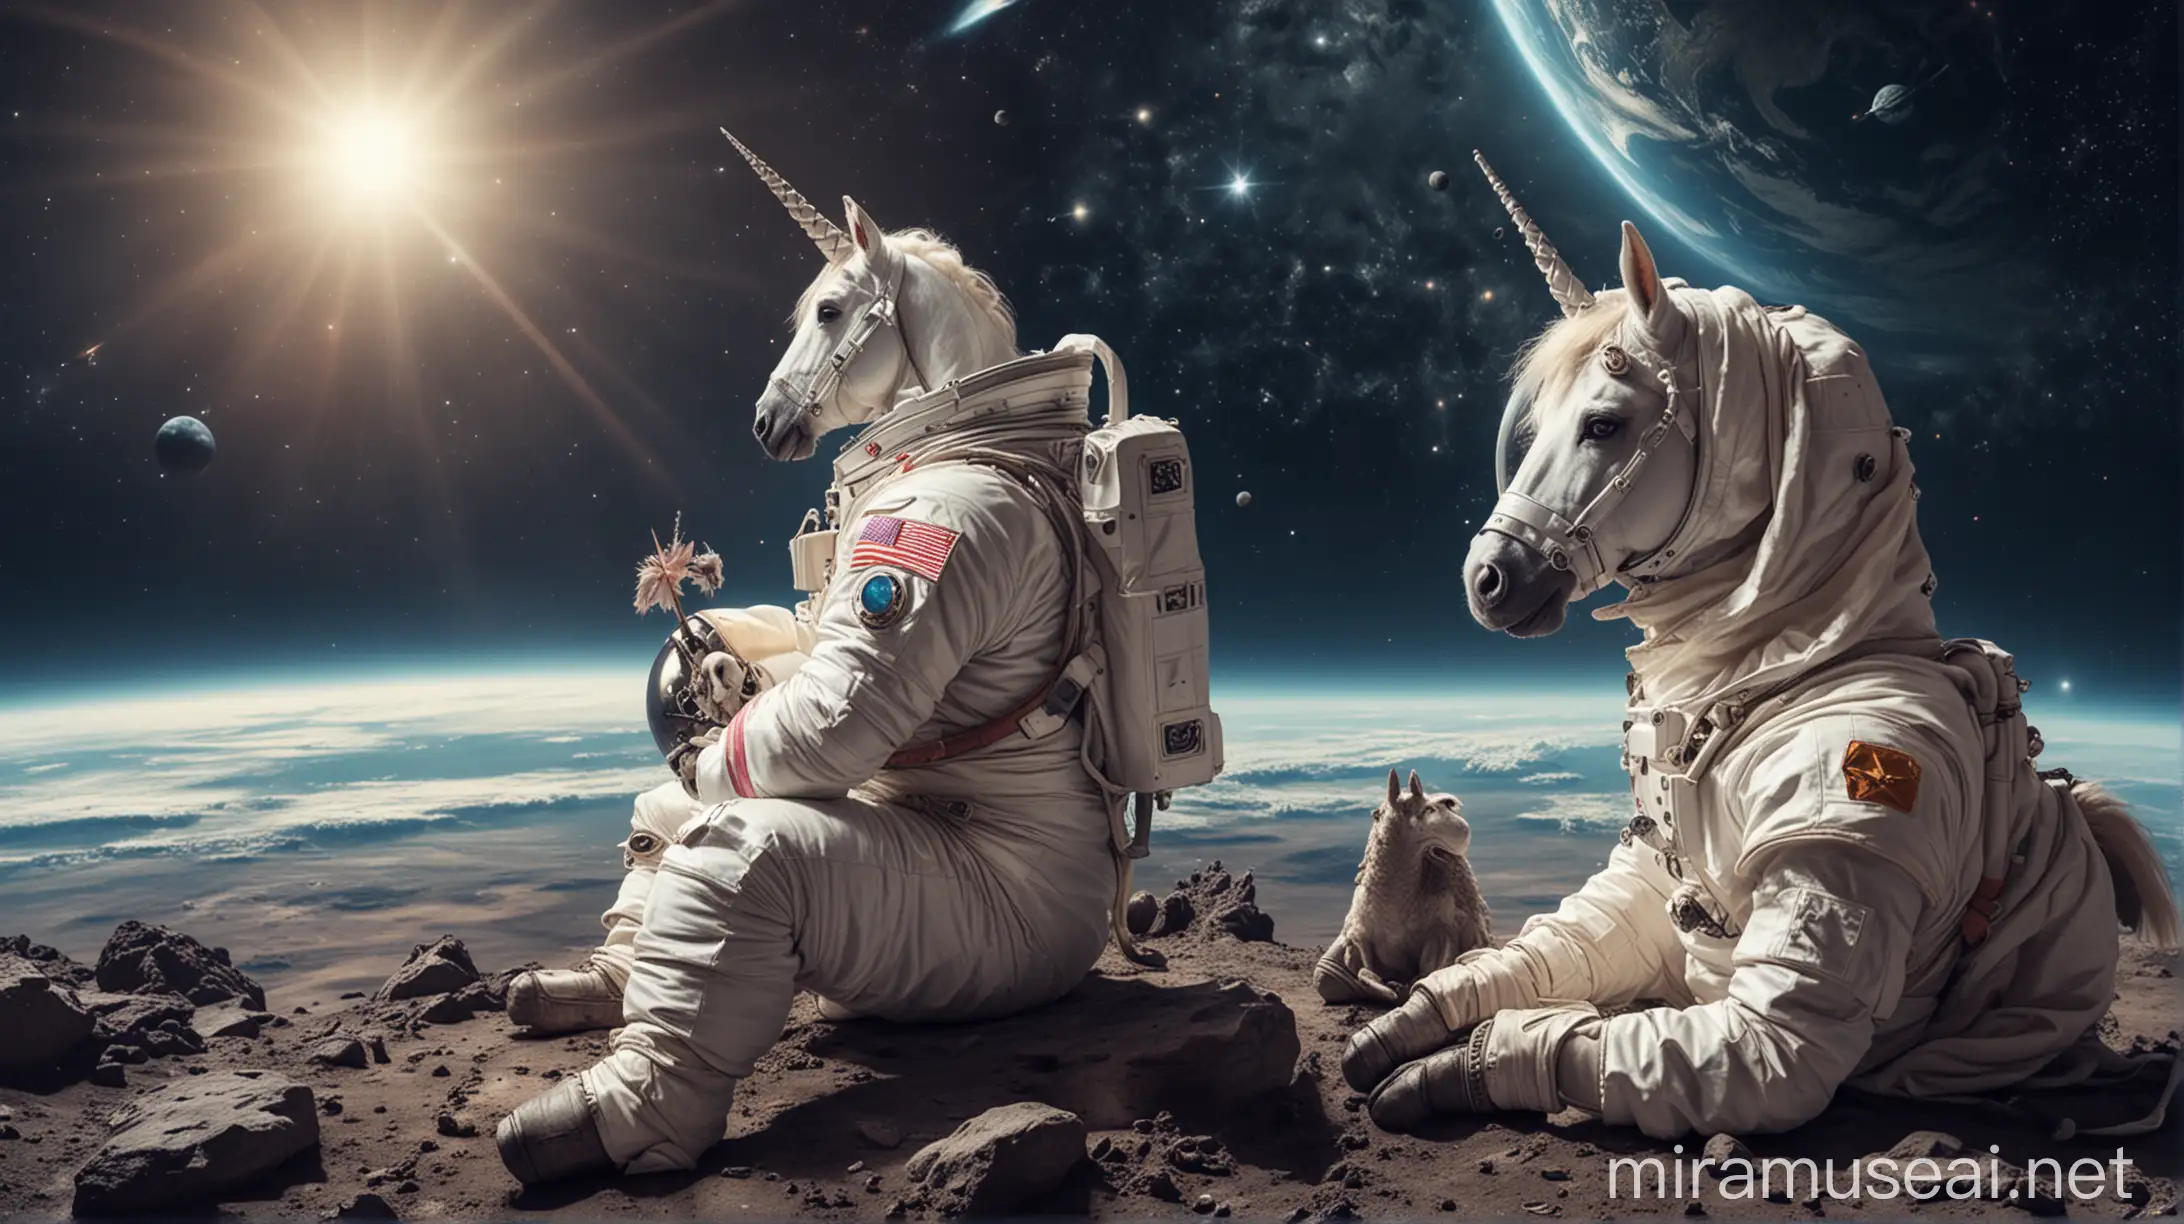 Cosmonaut with Unicorn Gazing Across Cosmic Expanse